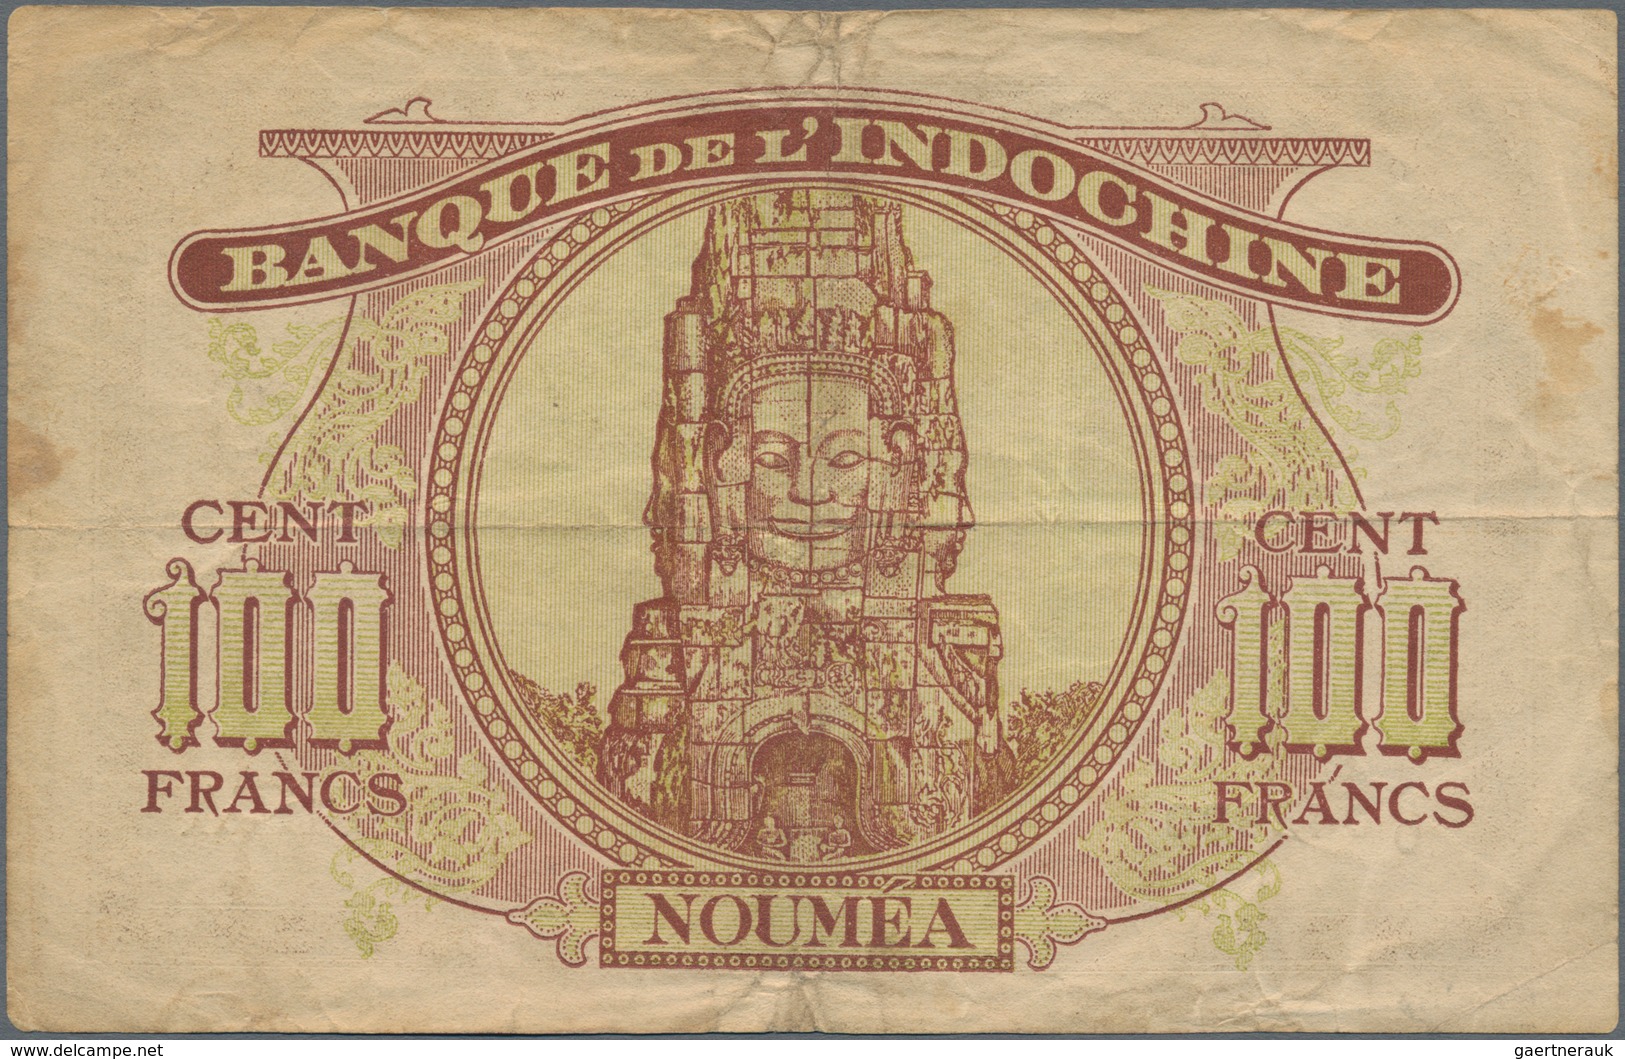 New Caledonia / Neu Kaledonien: Banque De L'Indochine 100 Francs ND(1942), P.44, Lightly Toned Paper - Nouméa (Nieuw-Caledonië 1873-1985)